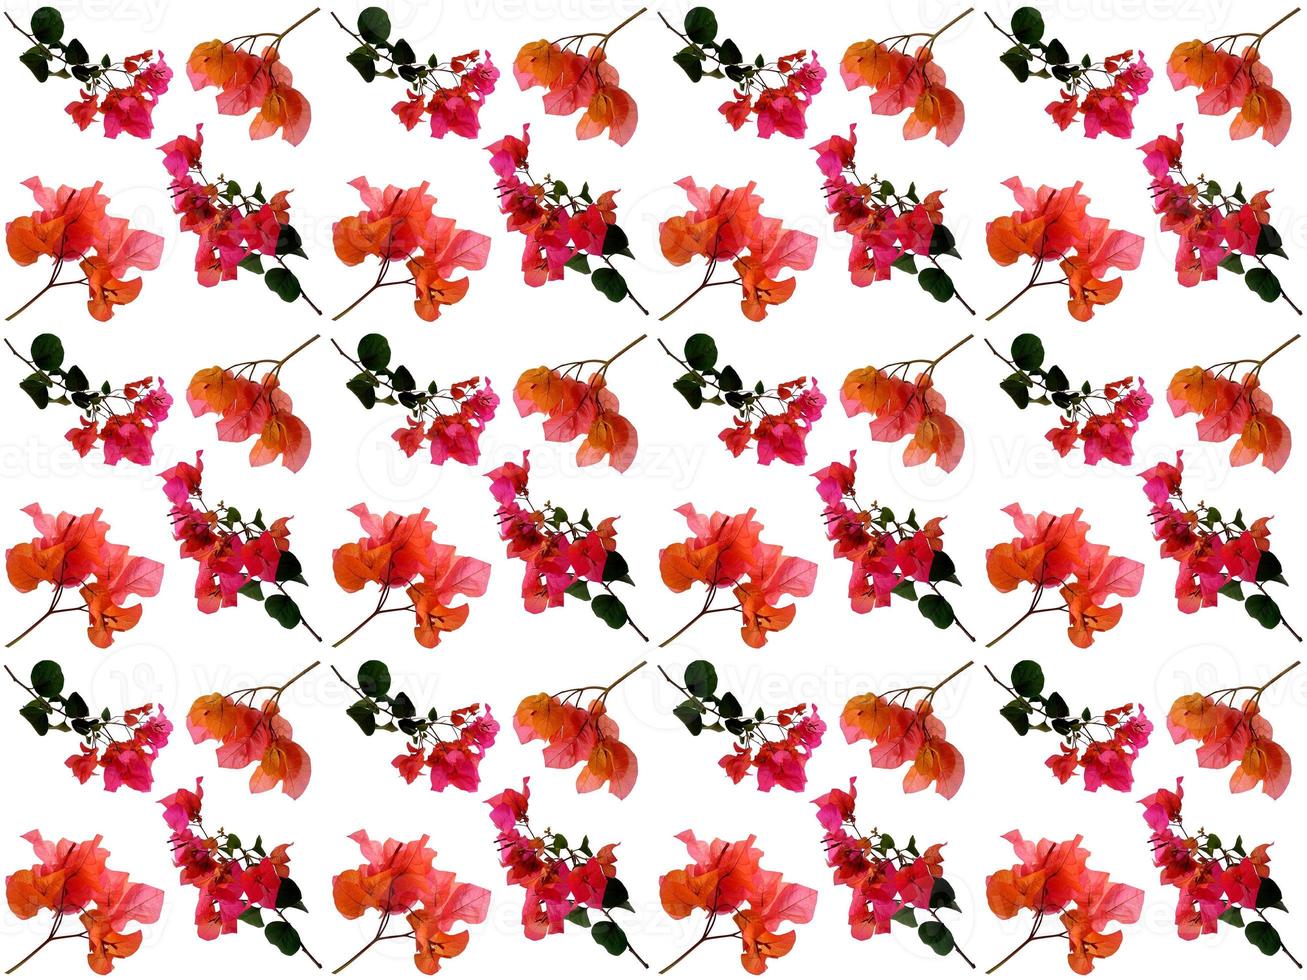 patroon bloemen op een witte achtergrond foto